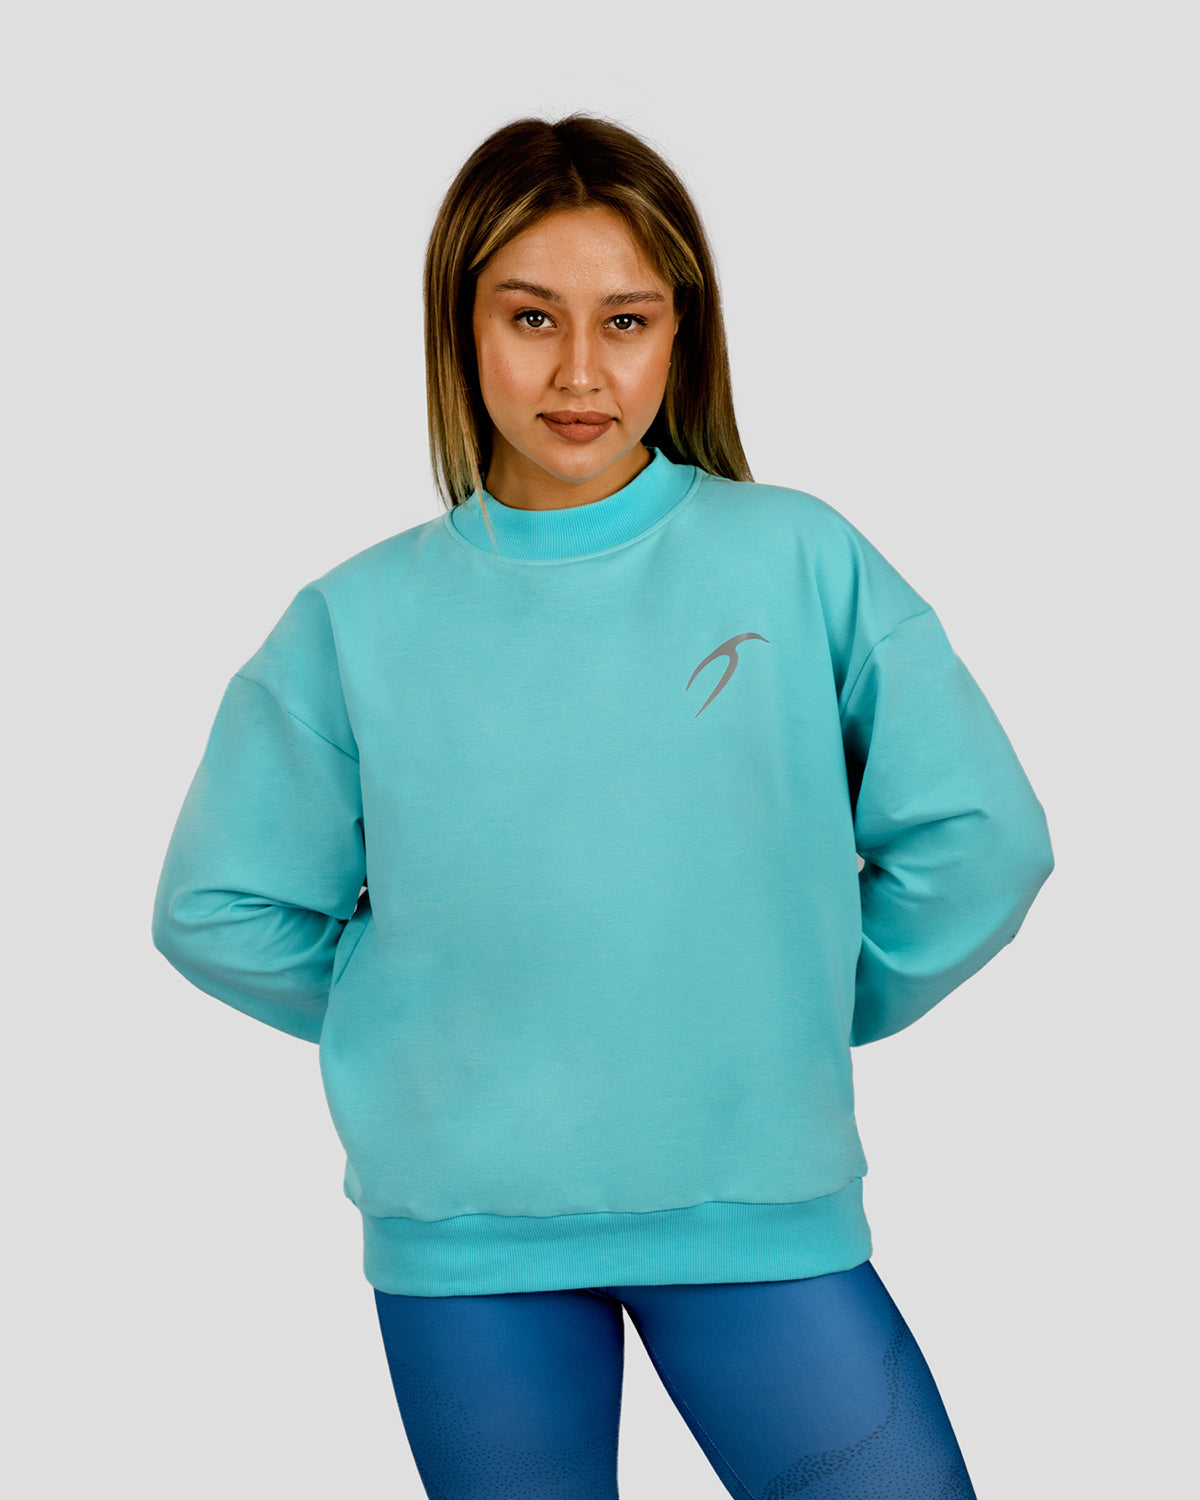 Atum women's ultra sweatshirt